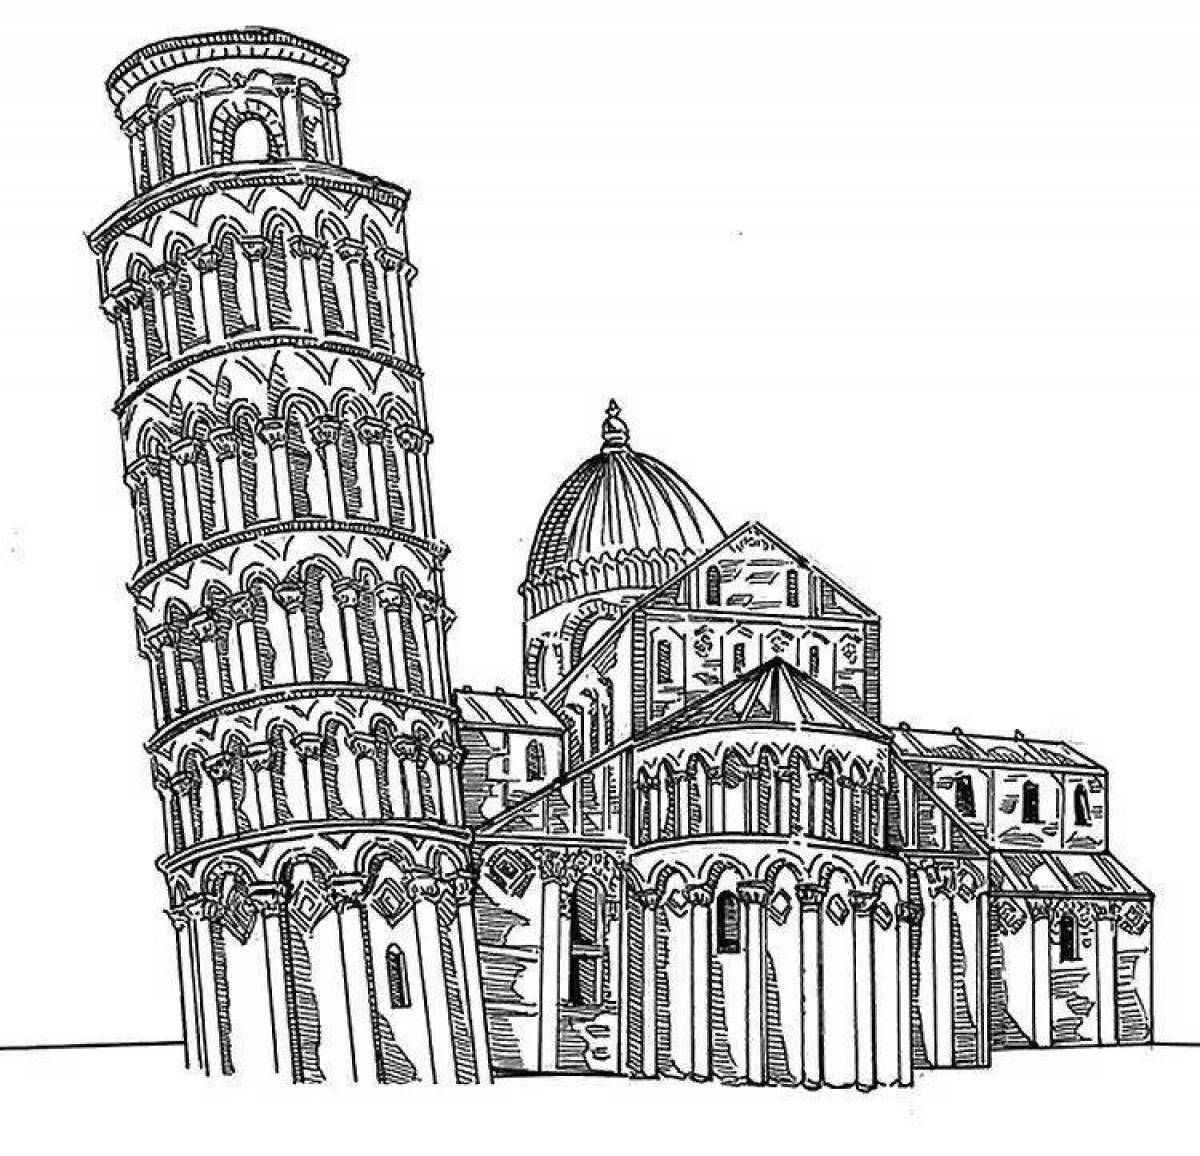 Пизанская башня Италия